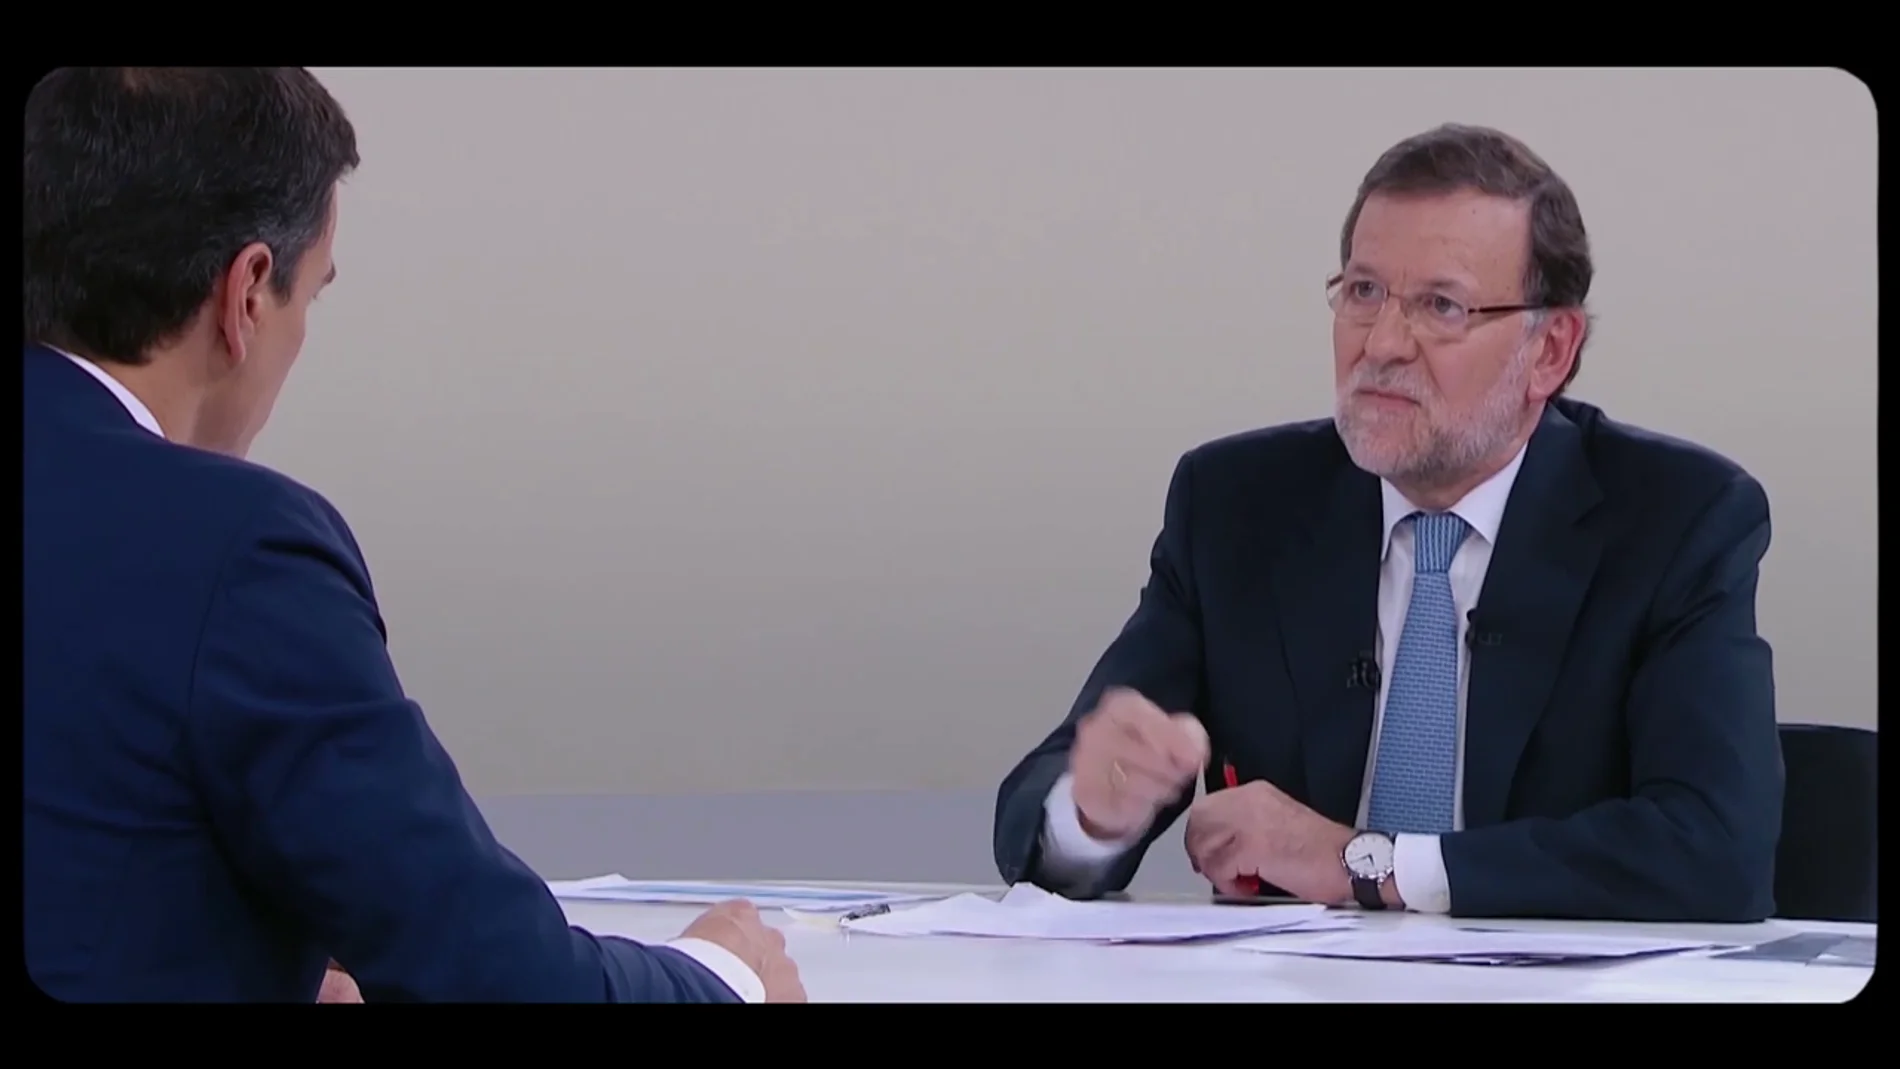 El lapsus de Rajoy durante su enfado con Pedro Sánchez en el cara a cara electoral de 2015: "Es una afirmación ruíz"